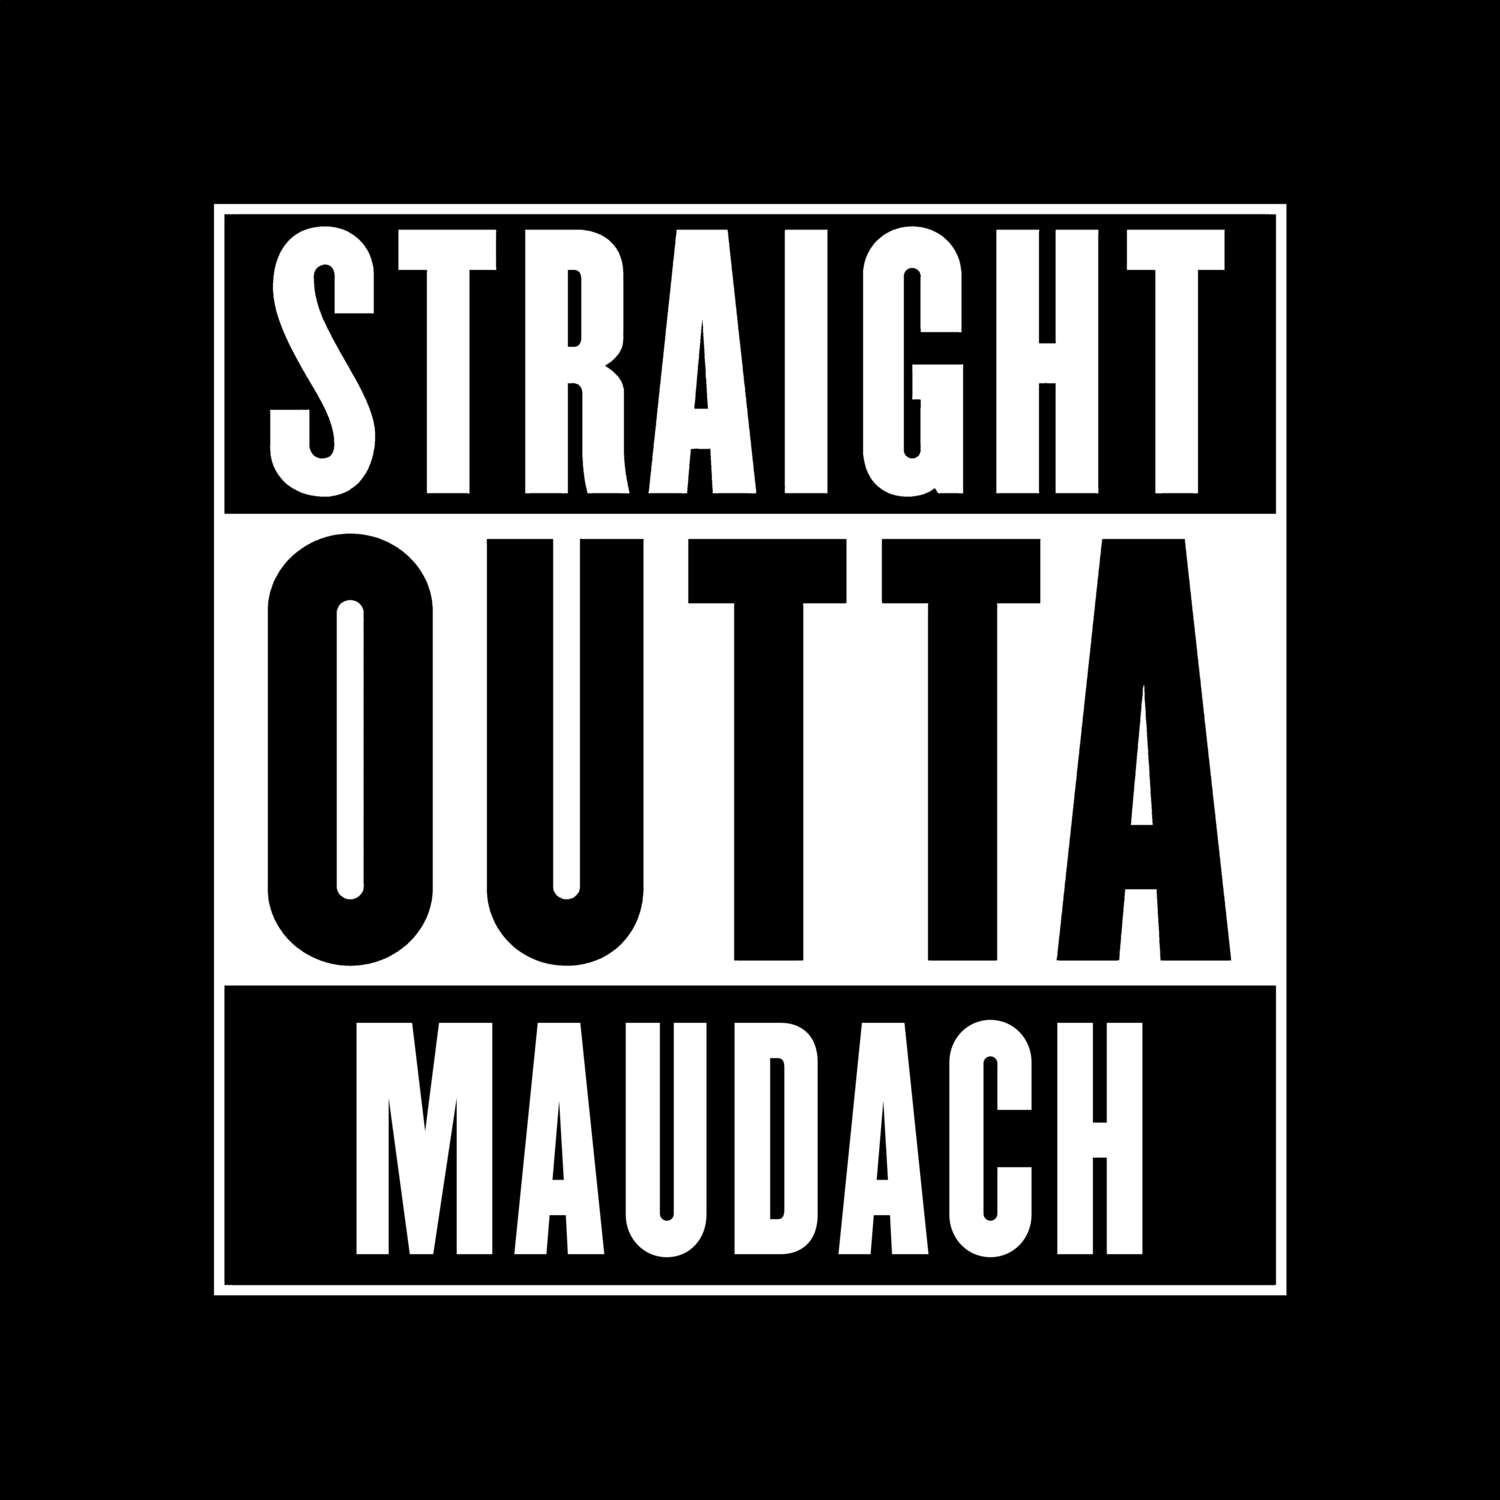 Maudach T-Shirt »Straight Outta«